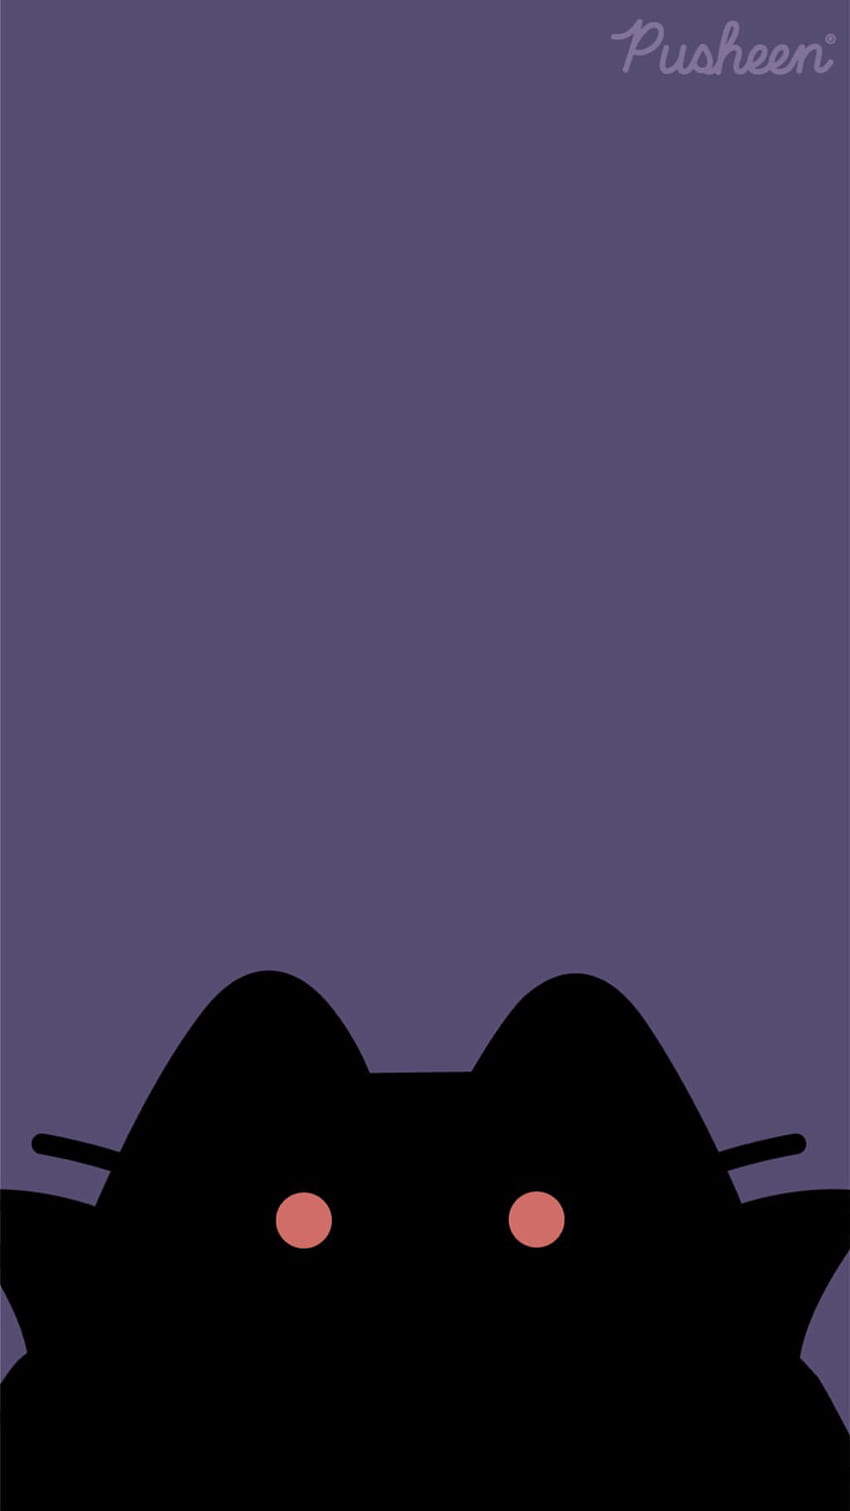 猫のプシーン iphone ヴァンパイア ハロウィーン 10 月。 iphone love, iPhone , iphone cute, Cute Dracula Halloween HD電話の壁紙